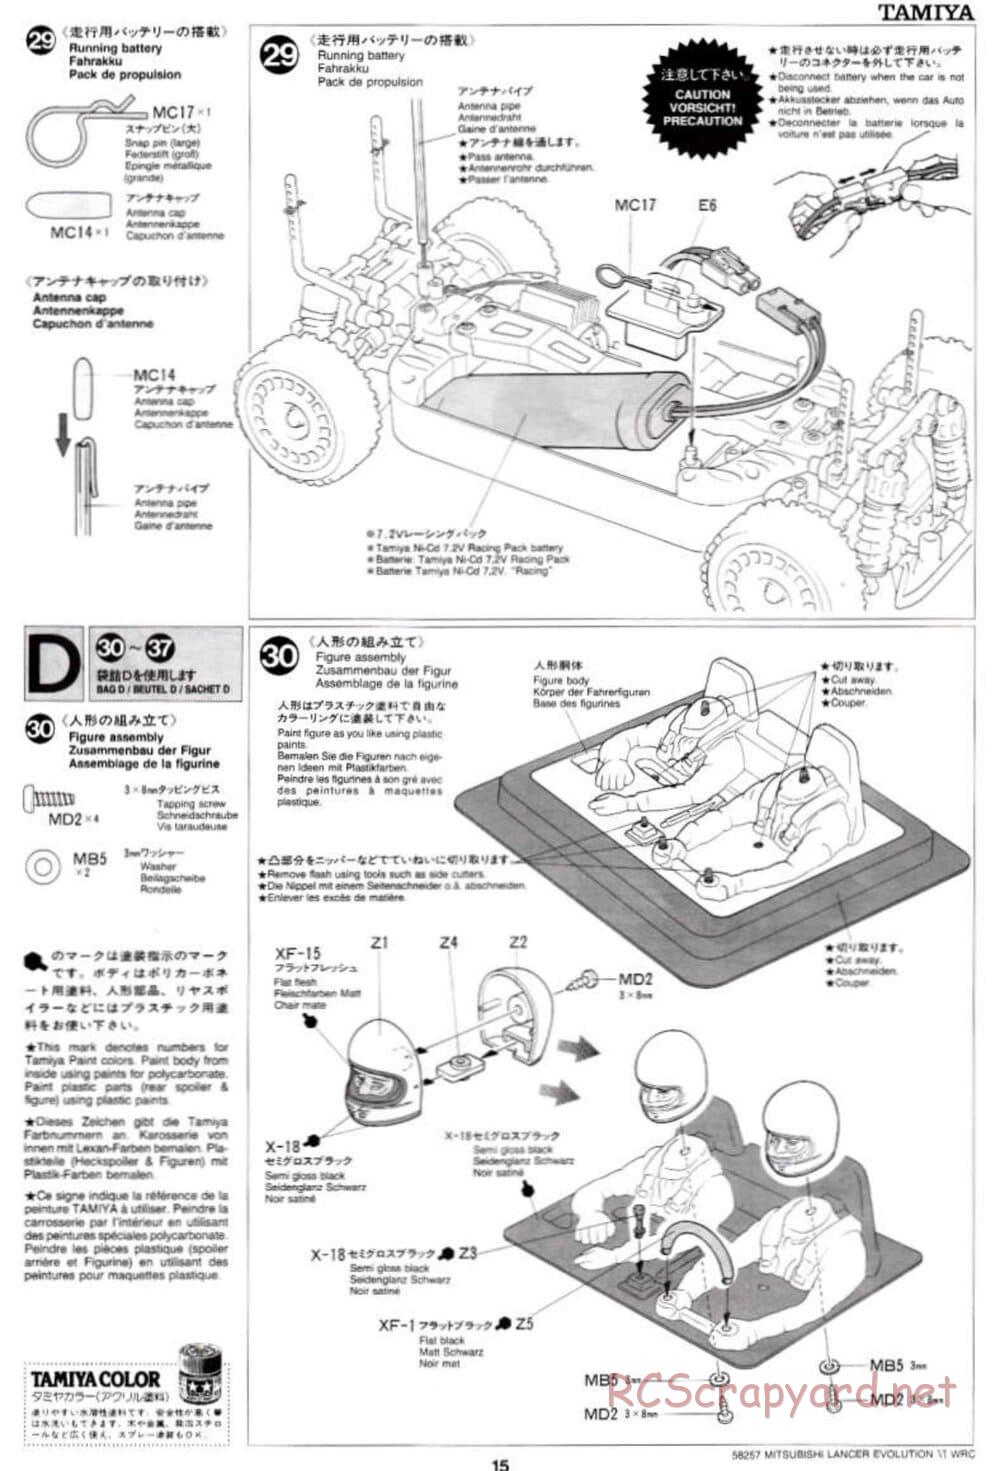 Tamiya - Mitsubishi Lancer Evolution VI WRC - TB-01 Chassis - Manual - Page 15